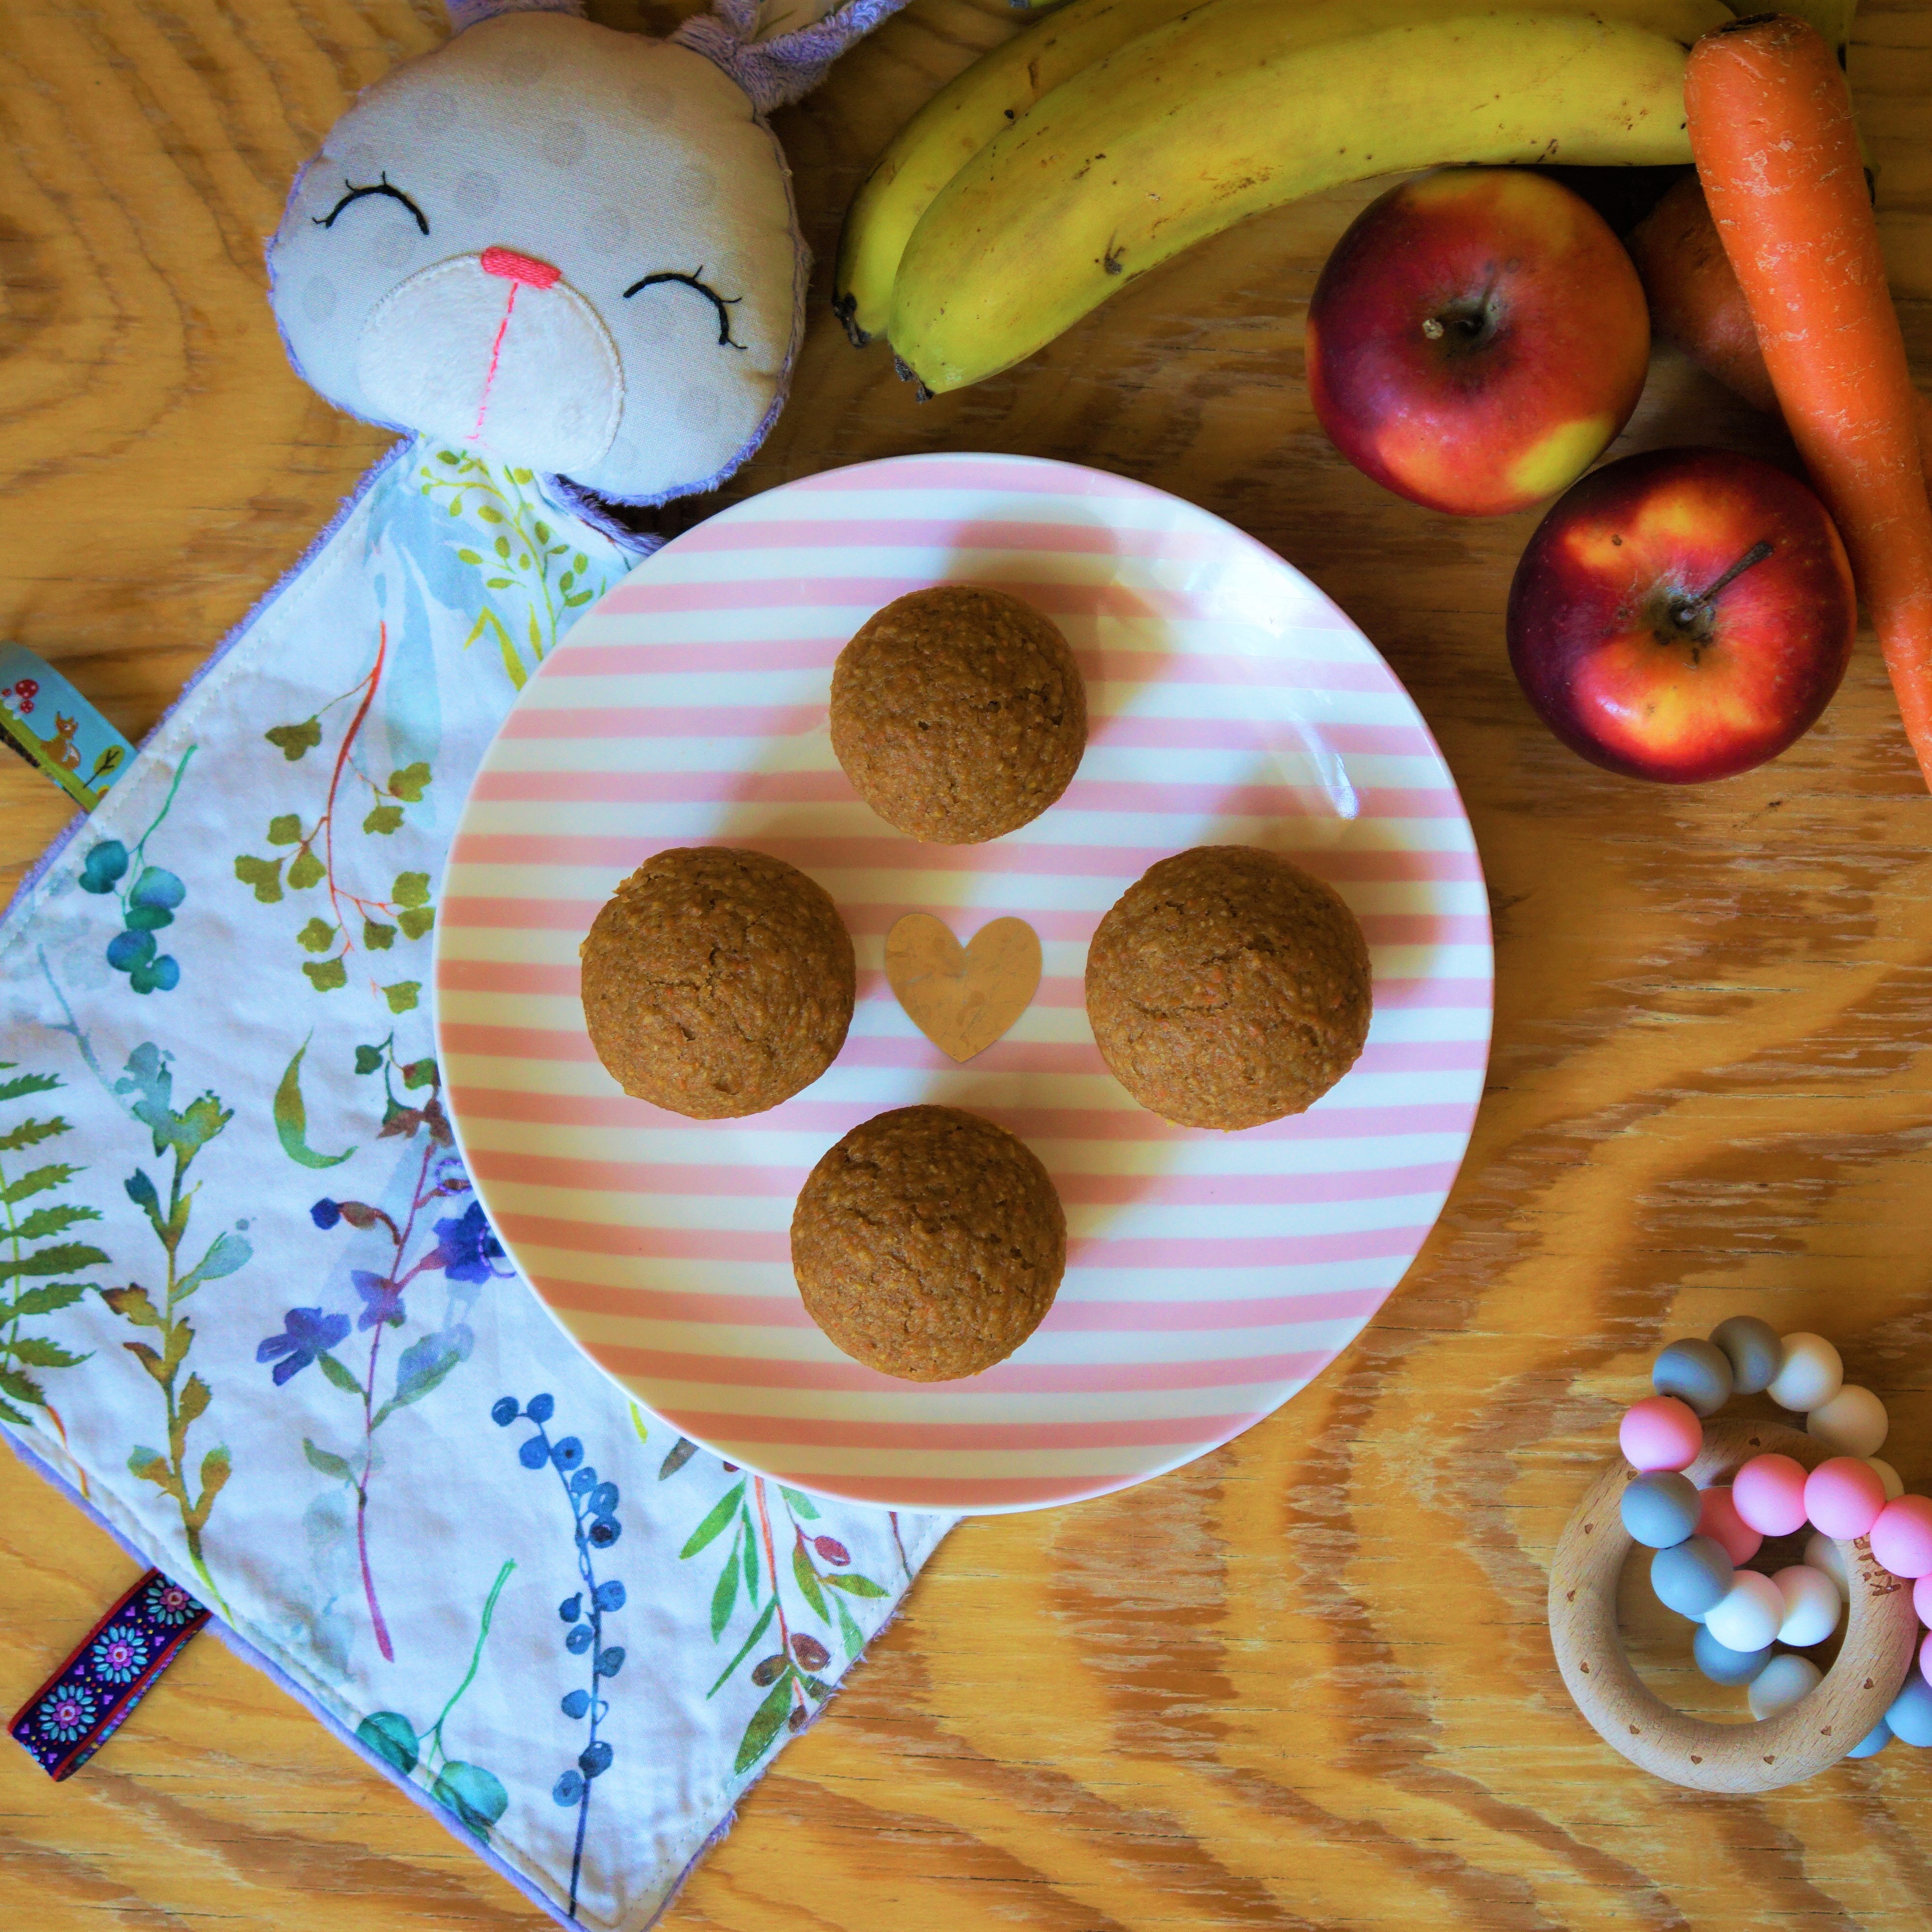 Štyri muffiny na ružovo bielom pásikavom tanieri v strede zlaté srdiečko na drevenom stole fialový látkový zajačik s lúčnymi kvetmi dve jablká dva banány mrkva ružovo šedé kúsatko s dreveným krúžkom